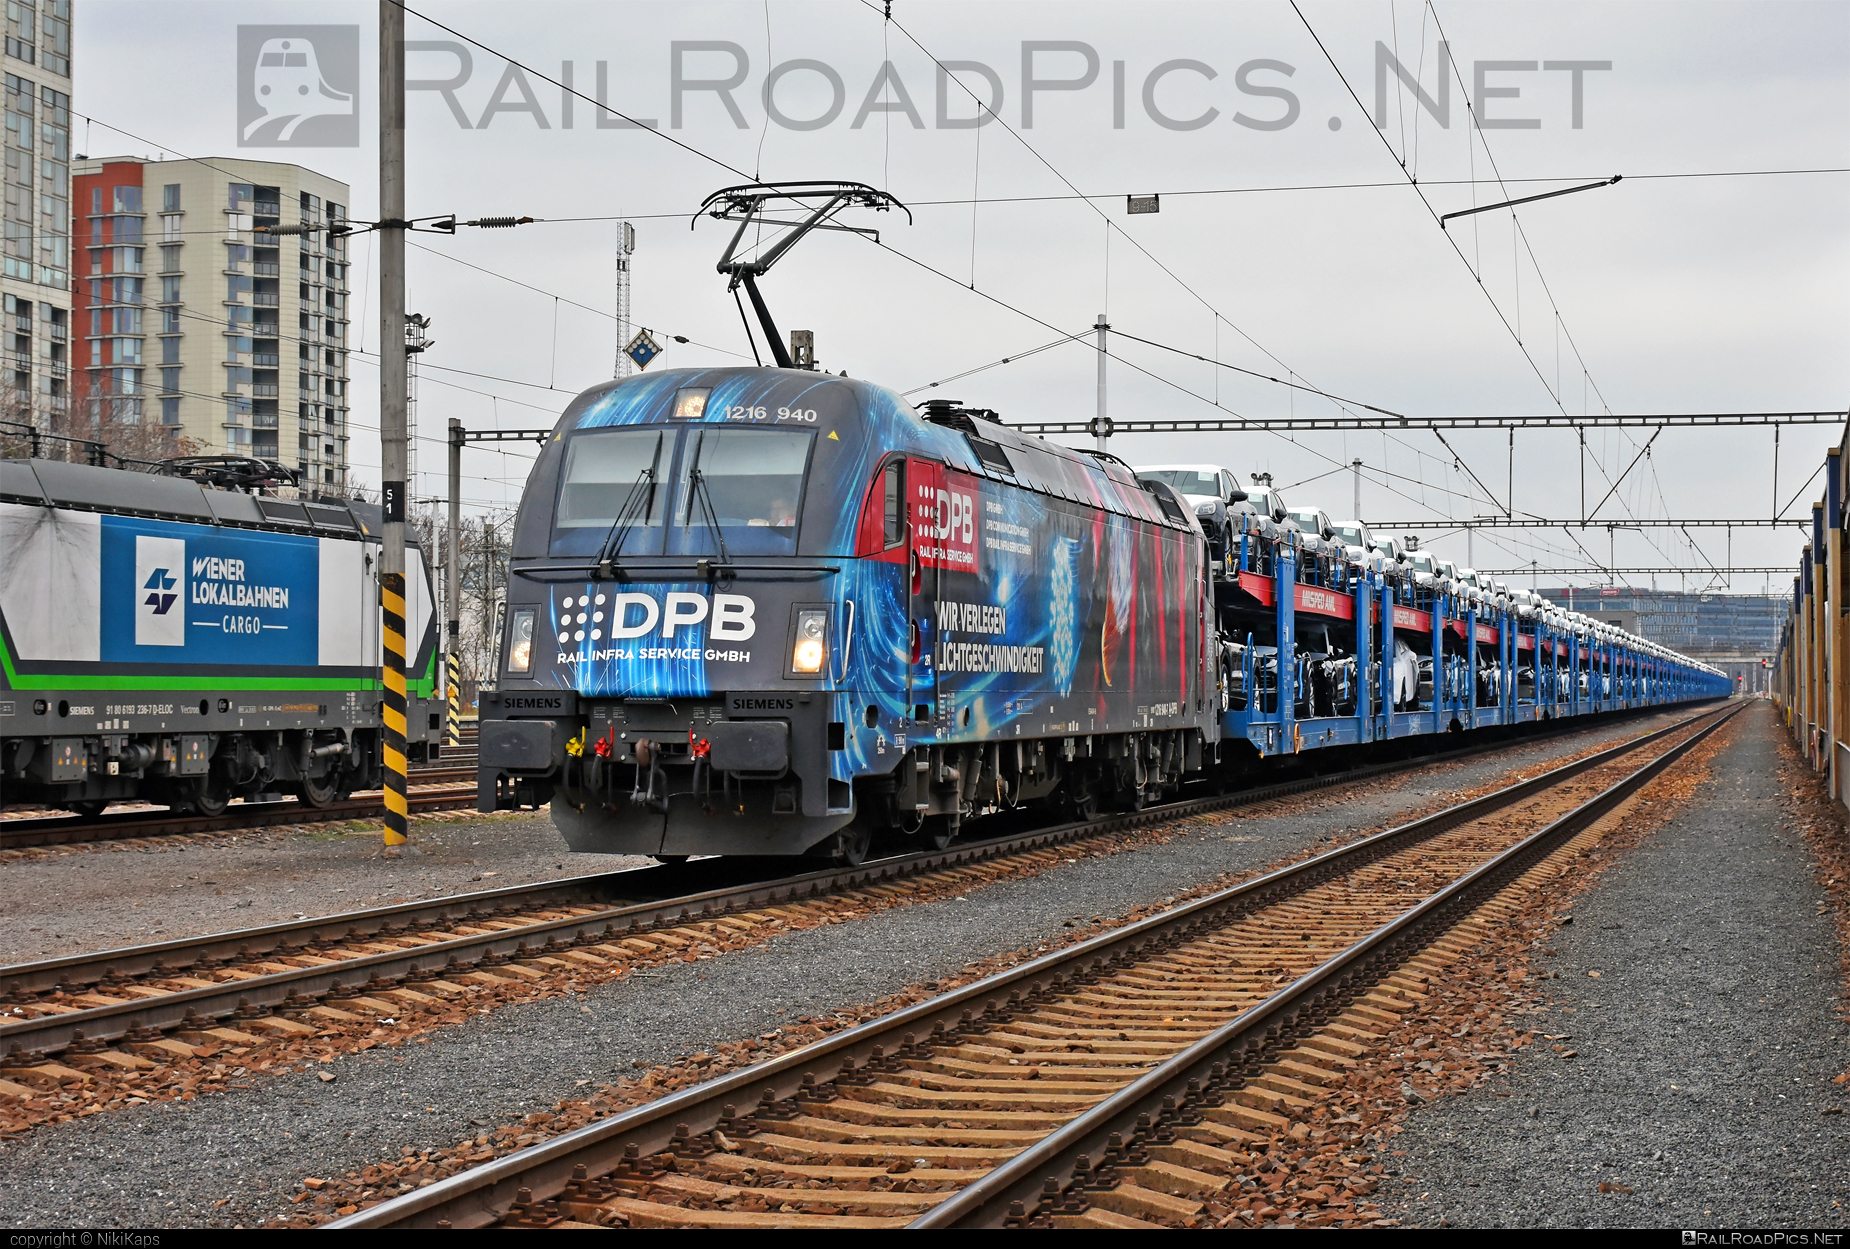 Siemens ES 64 U4 - 1216 940 operated by DPB Rail Infra Service GmbH #carcarrierwagon #dpb #dpbRailInfraService #dpbRailInfraServiceGmbh #es64 #es64u4 #eurosprinter #siemens #siemensEs64 #siemensEs64u4 #siemenstaurus #taurus #tauruslocomotive